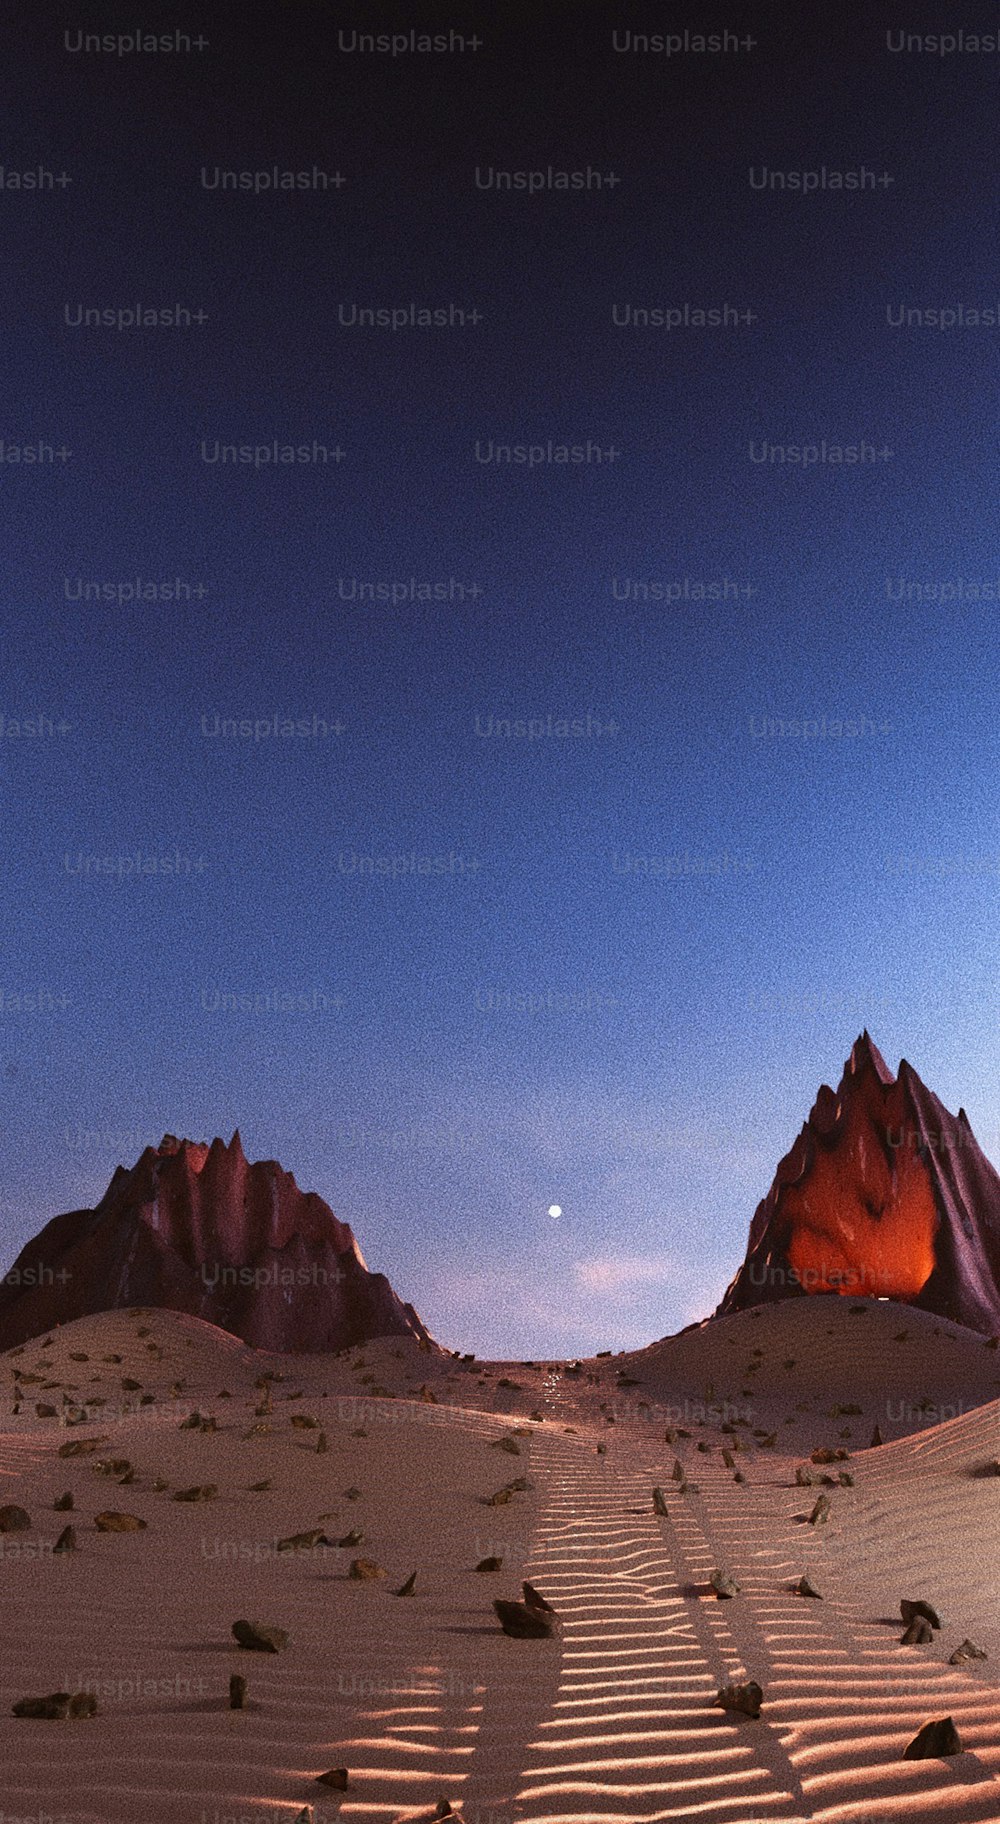 Una vista de un desierto con montañas al fondo